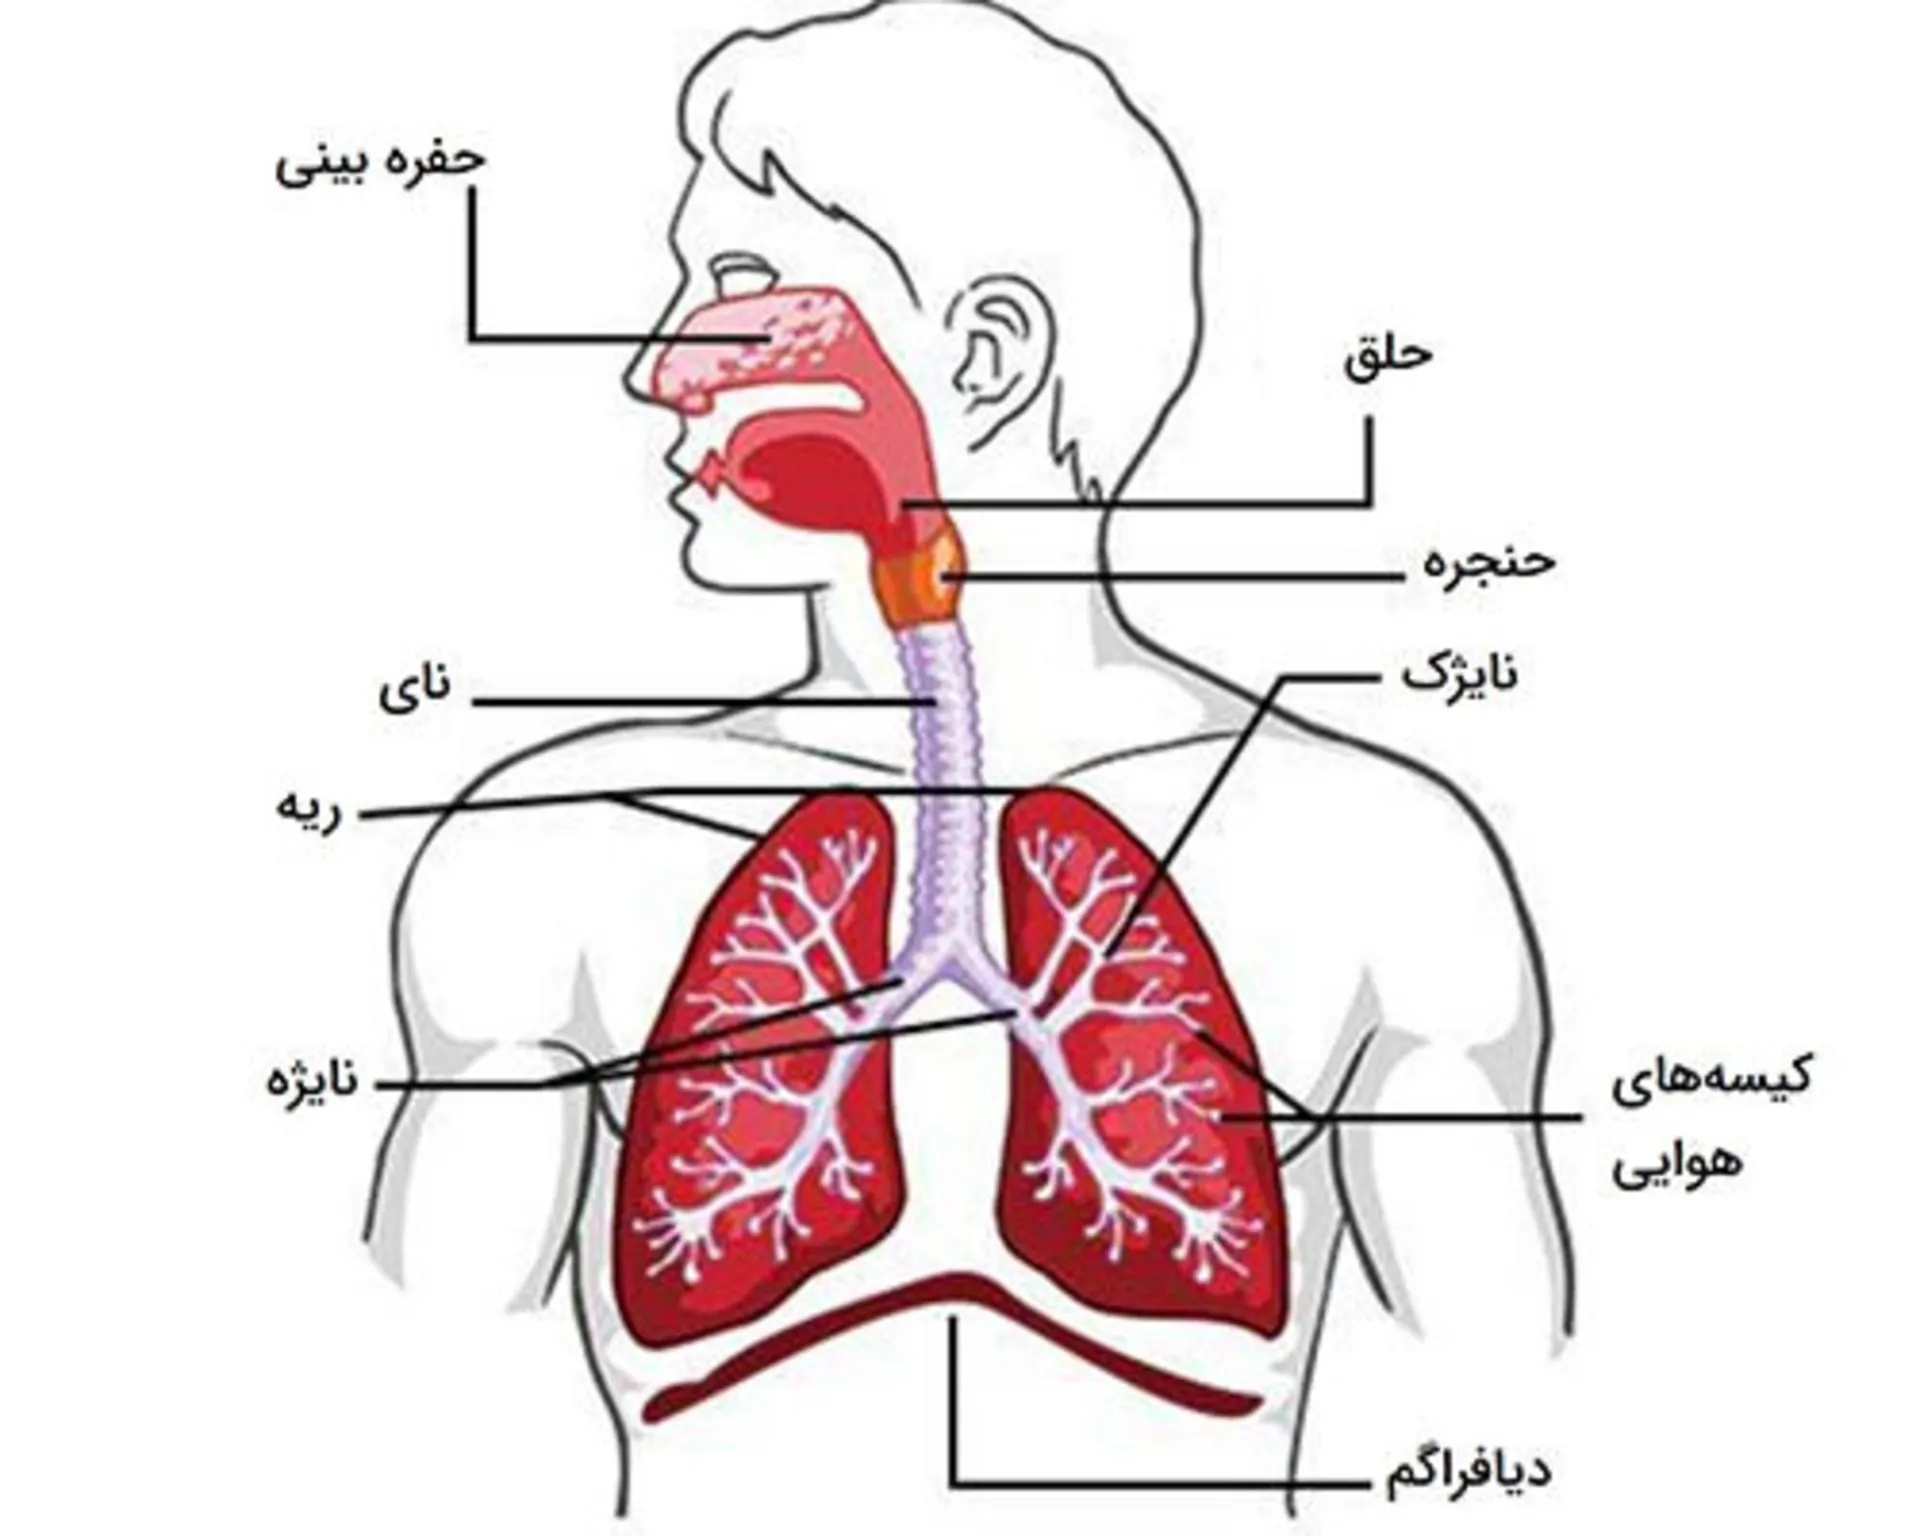 اجزای سیستم تنفسی انسان